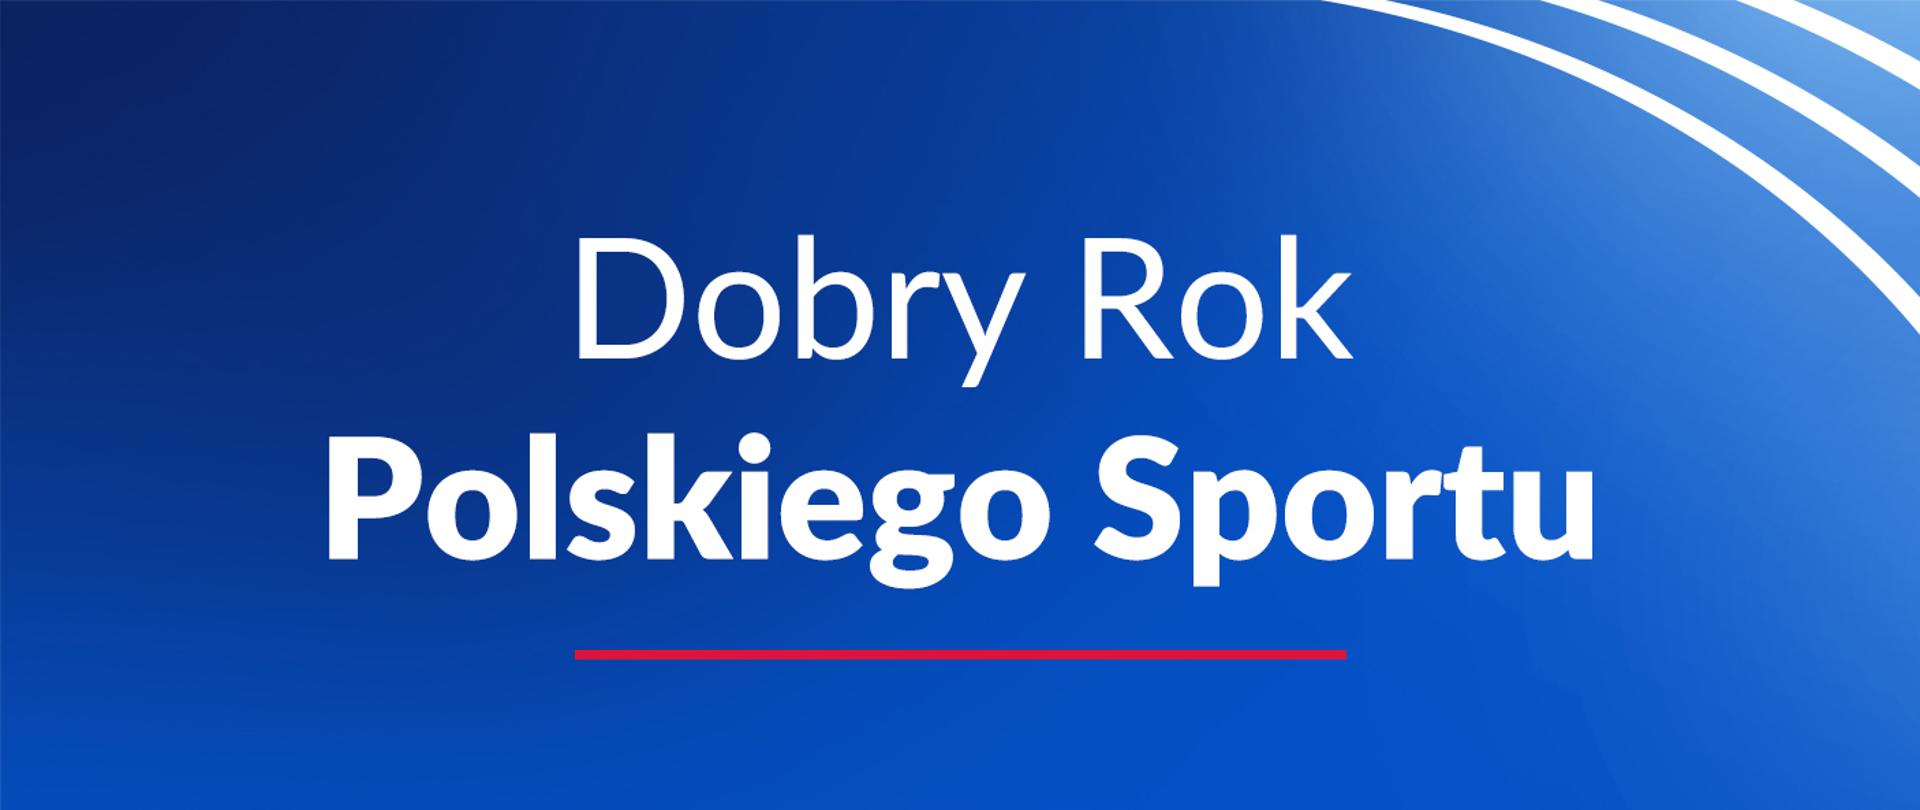 Na niebiesko-błękitnym tle grafiki znajduje się biały napis: "Dobry Rok Polskiego Sportu".